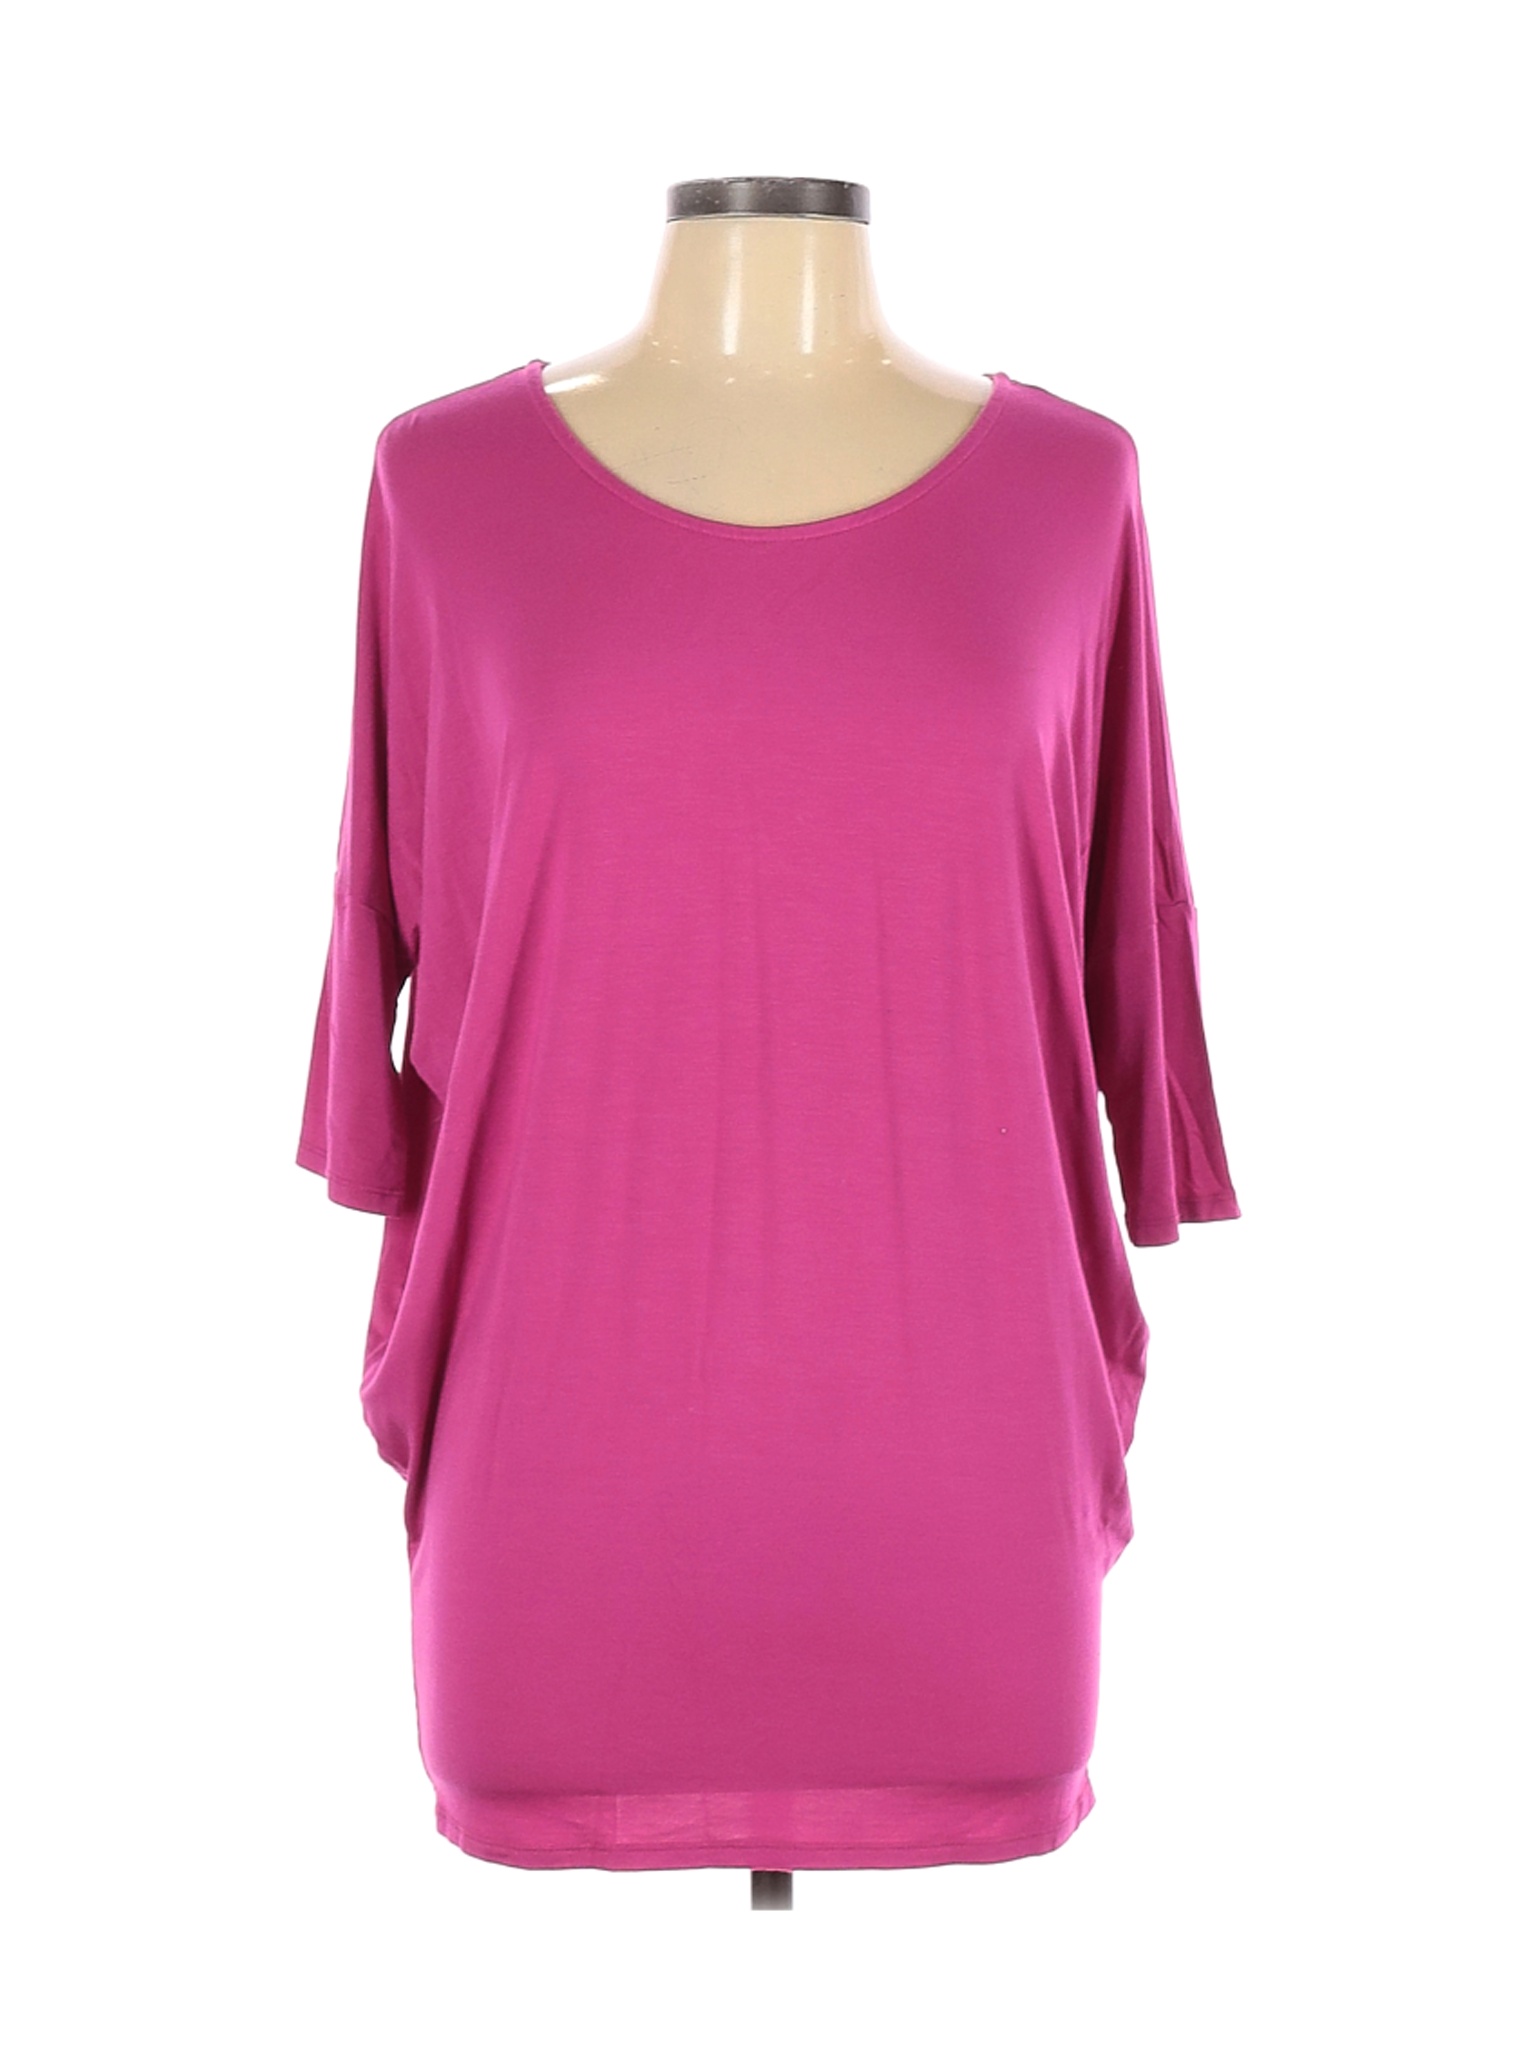 Agnes & Dora Solid Pink Short Sleeve T-Shirt Size L - 73% off | thredUP